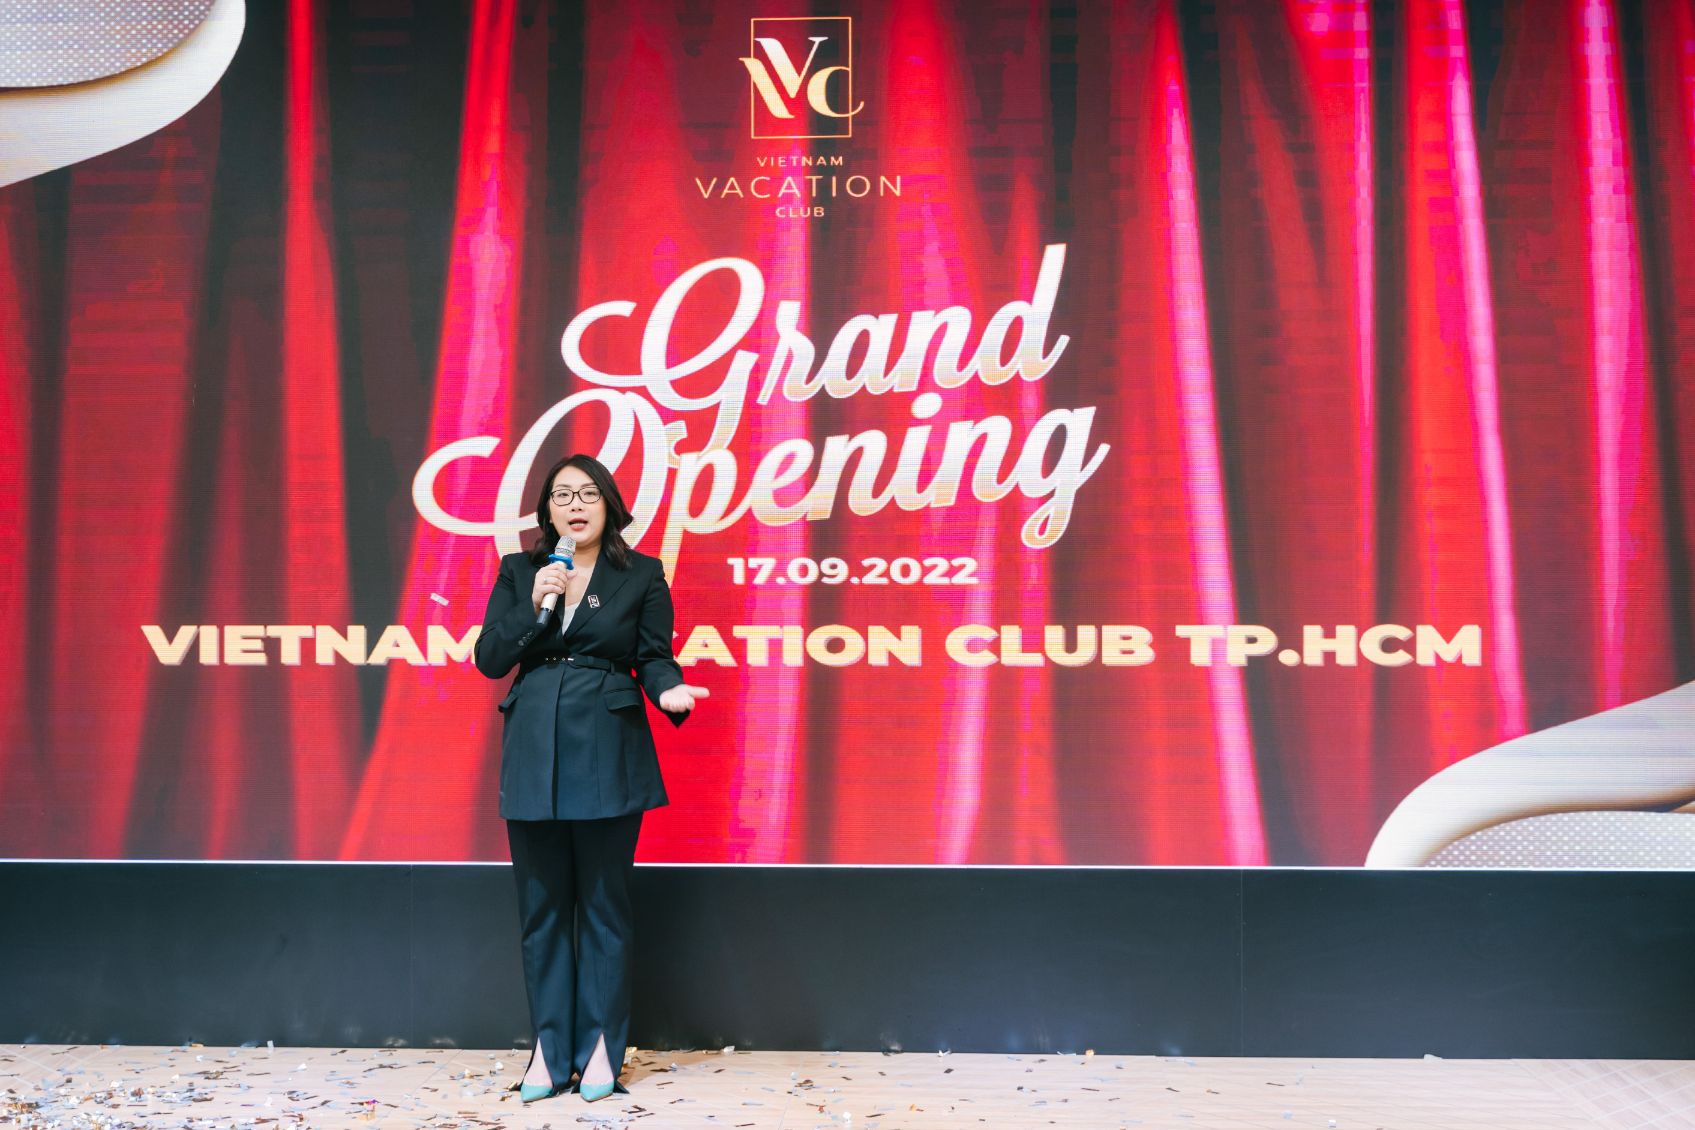 Vietnam Vacation Club 2.1 Vietnam Vacation Club khai trương chi nhánh miền Nam tại TP.HCM